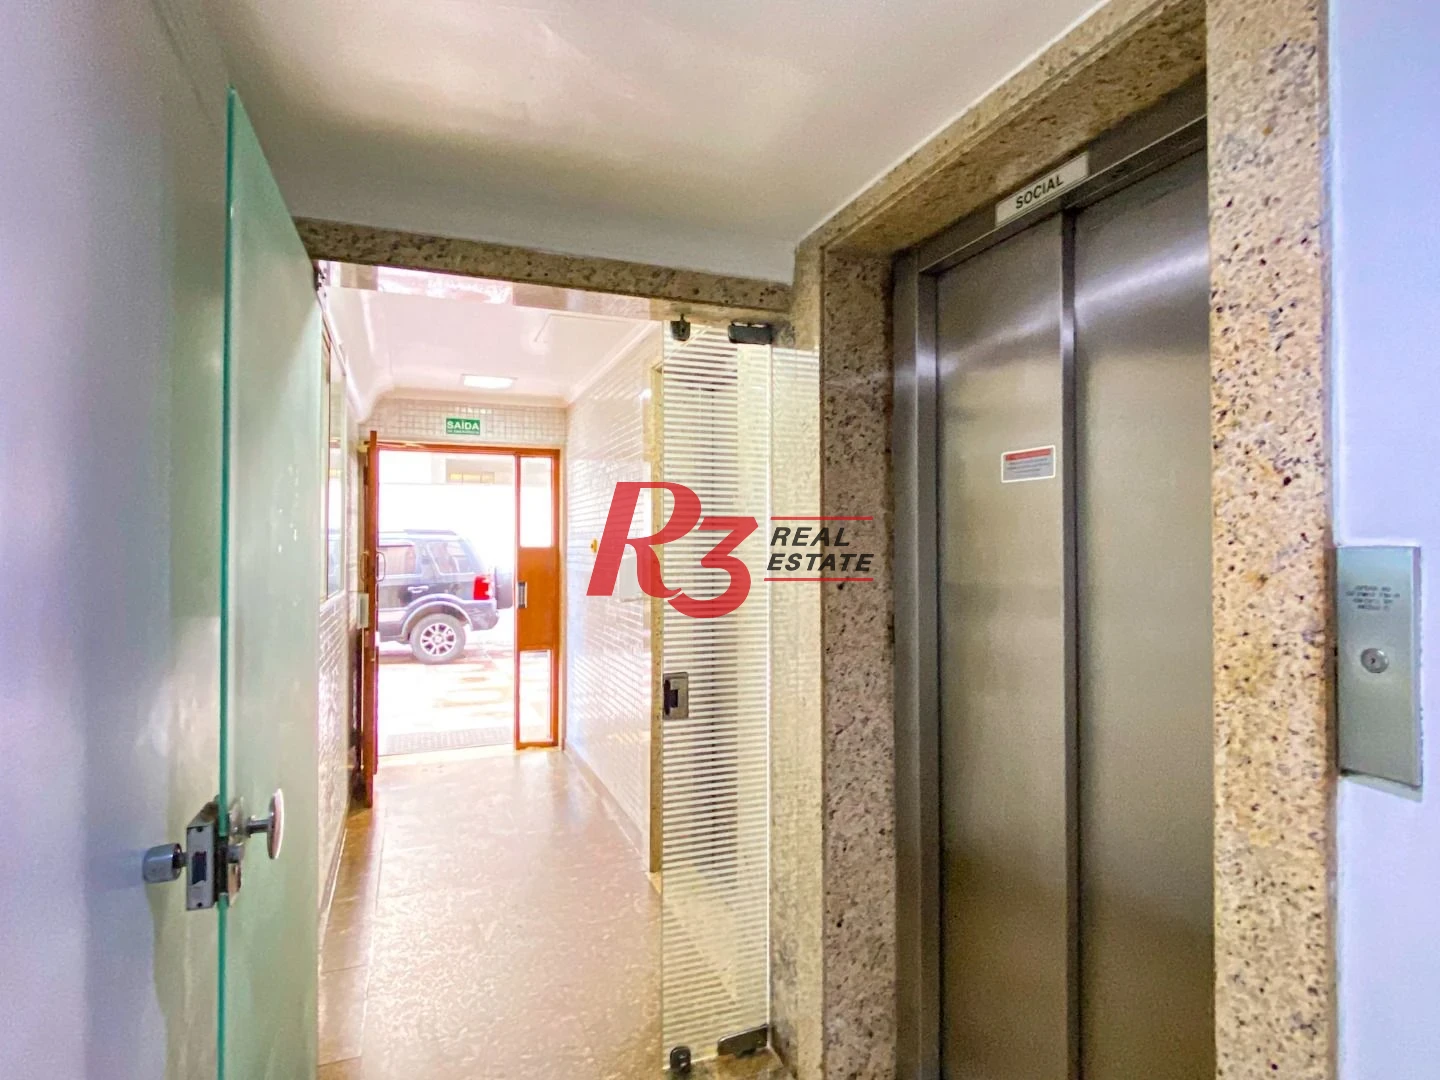 Apartamento com 3 dormitórios à venda, 130 m² por R$ 1.050.000,00 - Gonzaga - Santos/SP